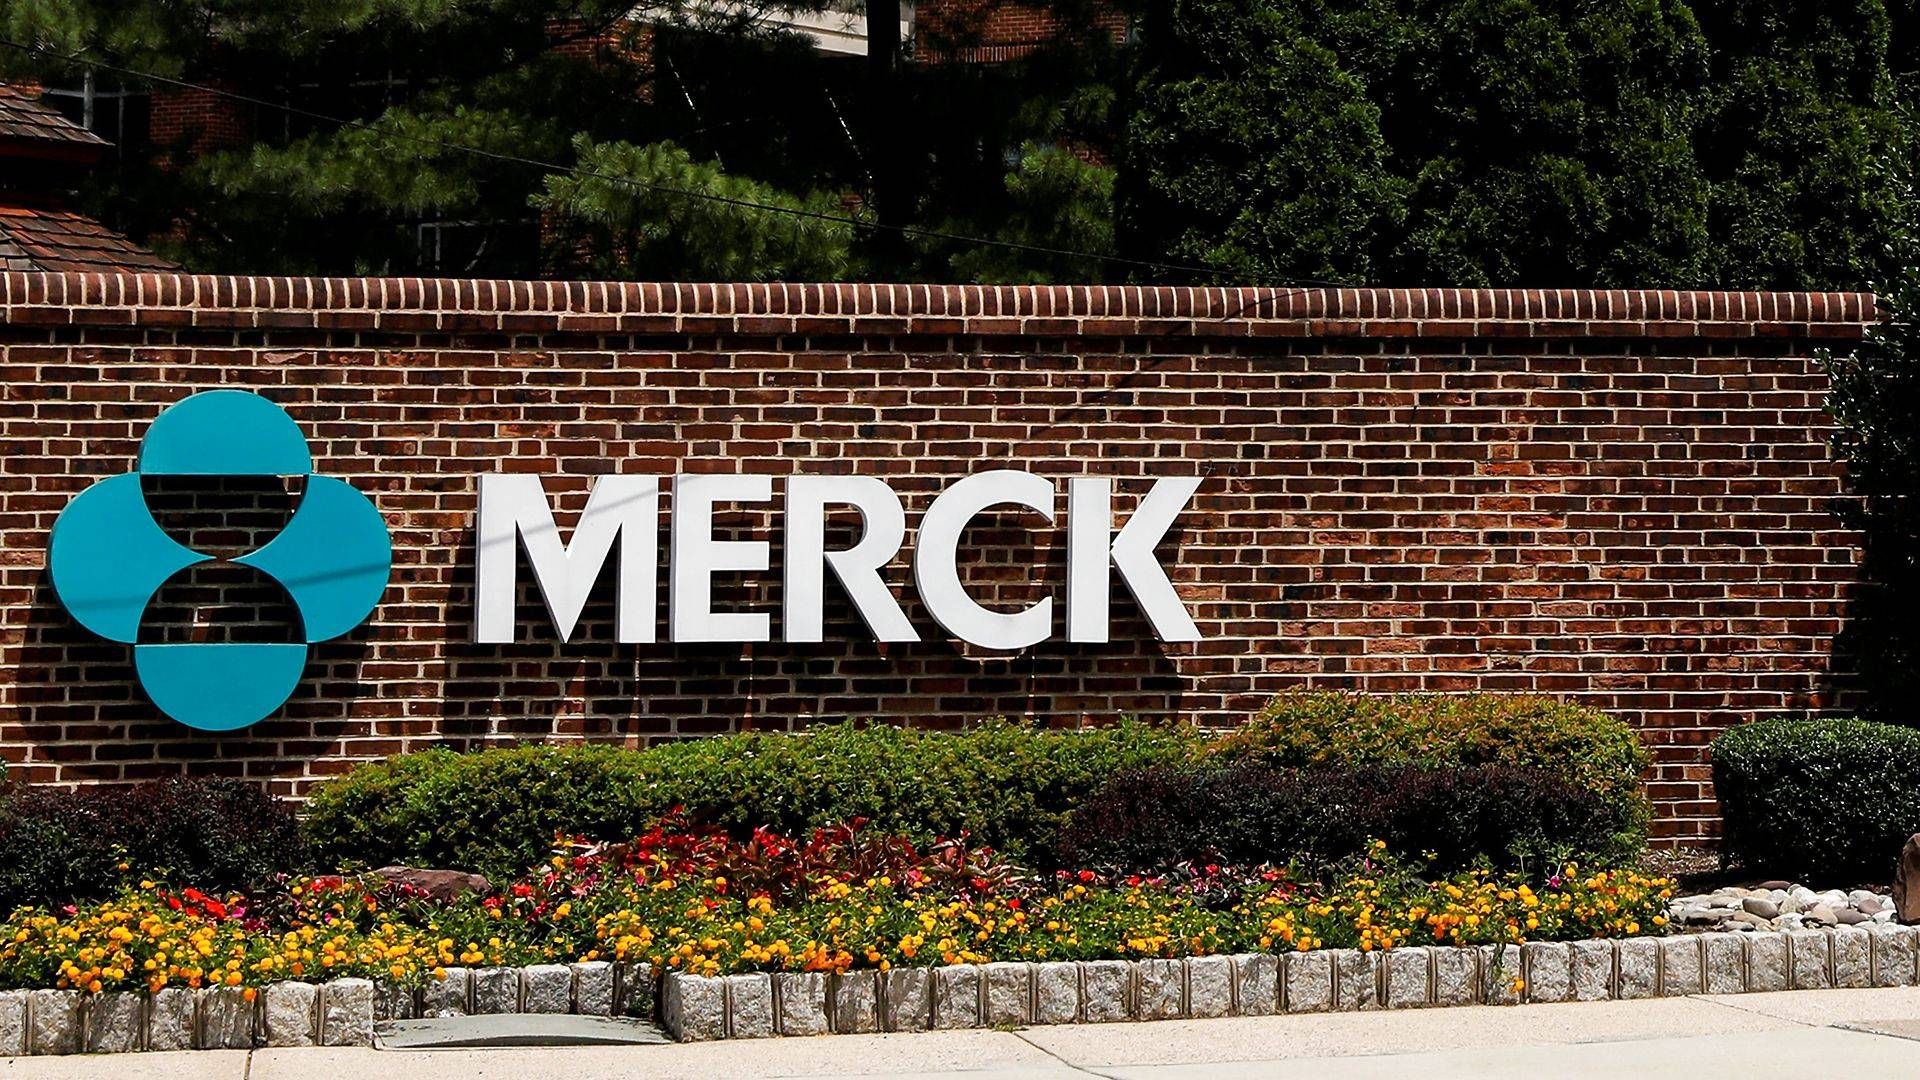 MSD er i USA kendt som Merck.